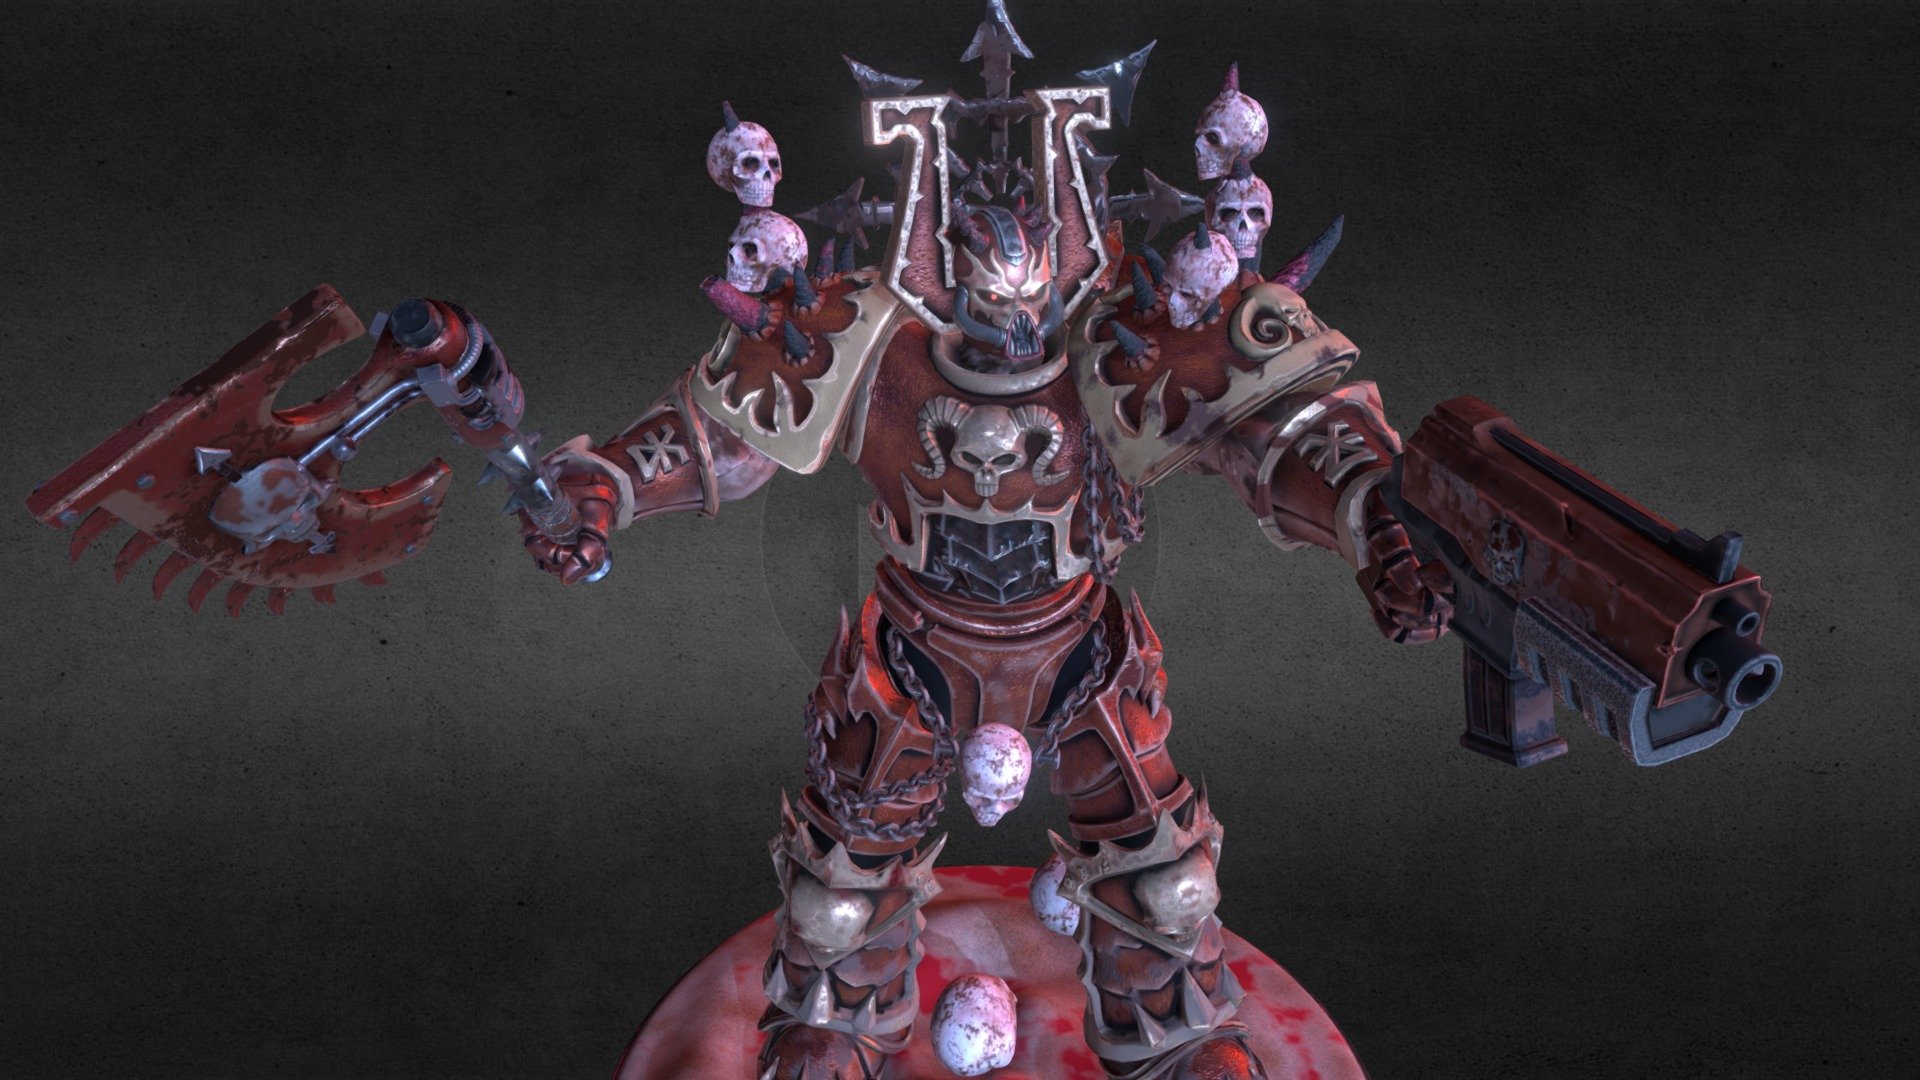 Blood for the Blood God! Skulls for the Skull Throne! - Warhammer 40000 - Warrior of Khorne - 3D model by vlabutenkov 3d model